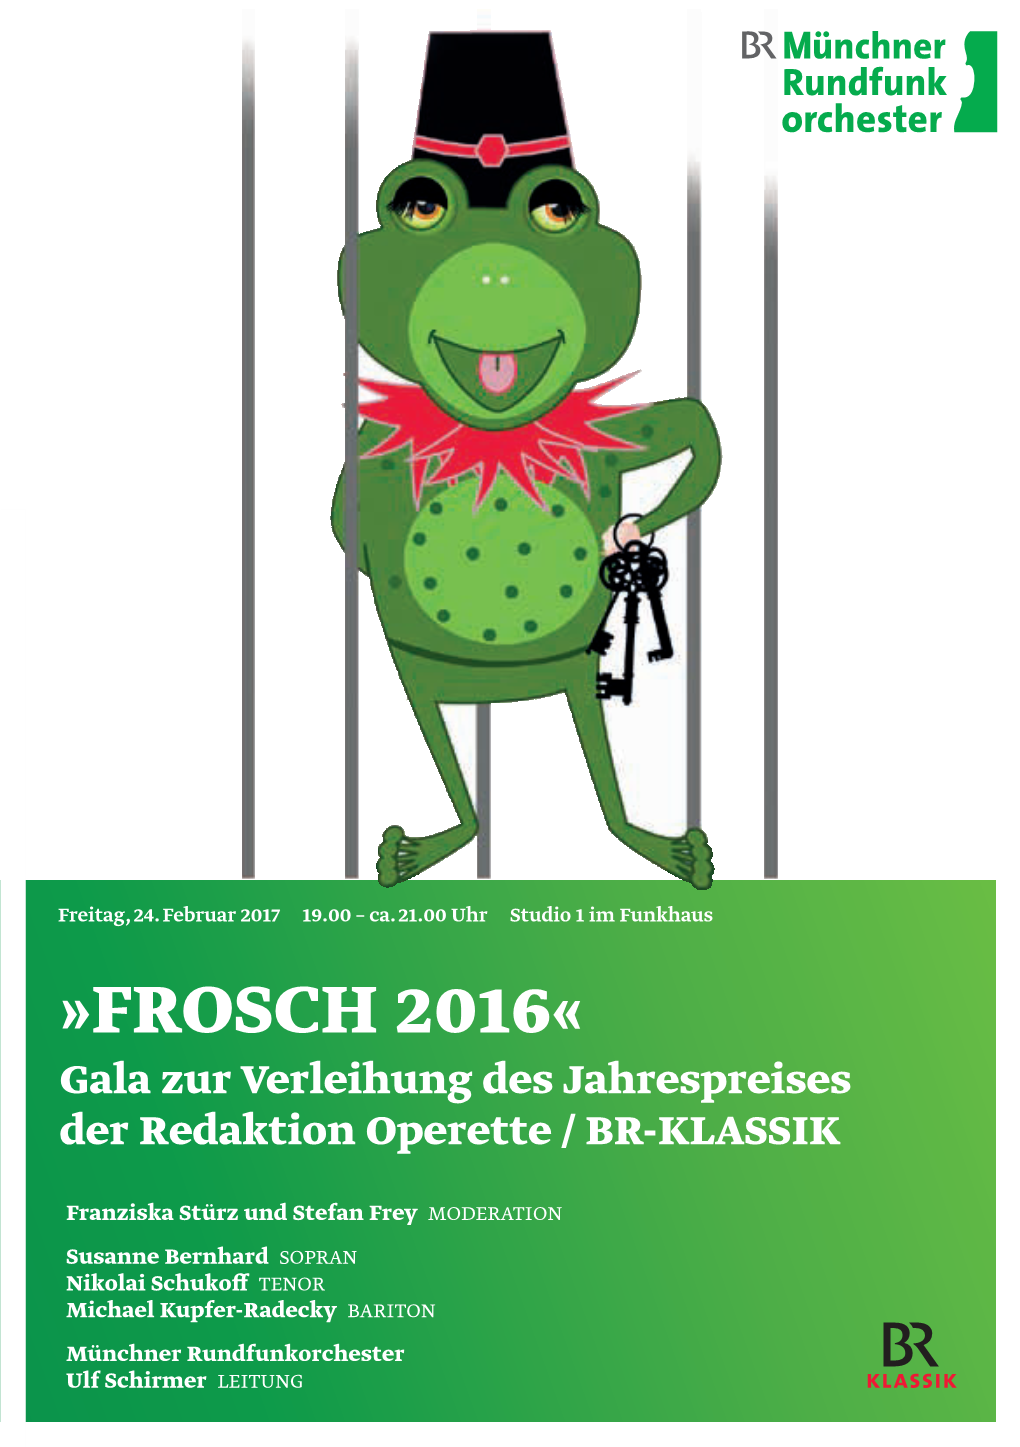 FROSCH 2016« Gala Zur Verleihung Des Jahrespreises Der Redaktion Operette / BR-KLASSIK